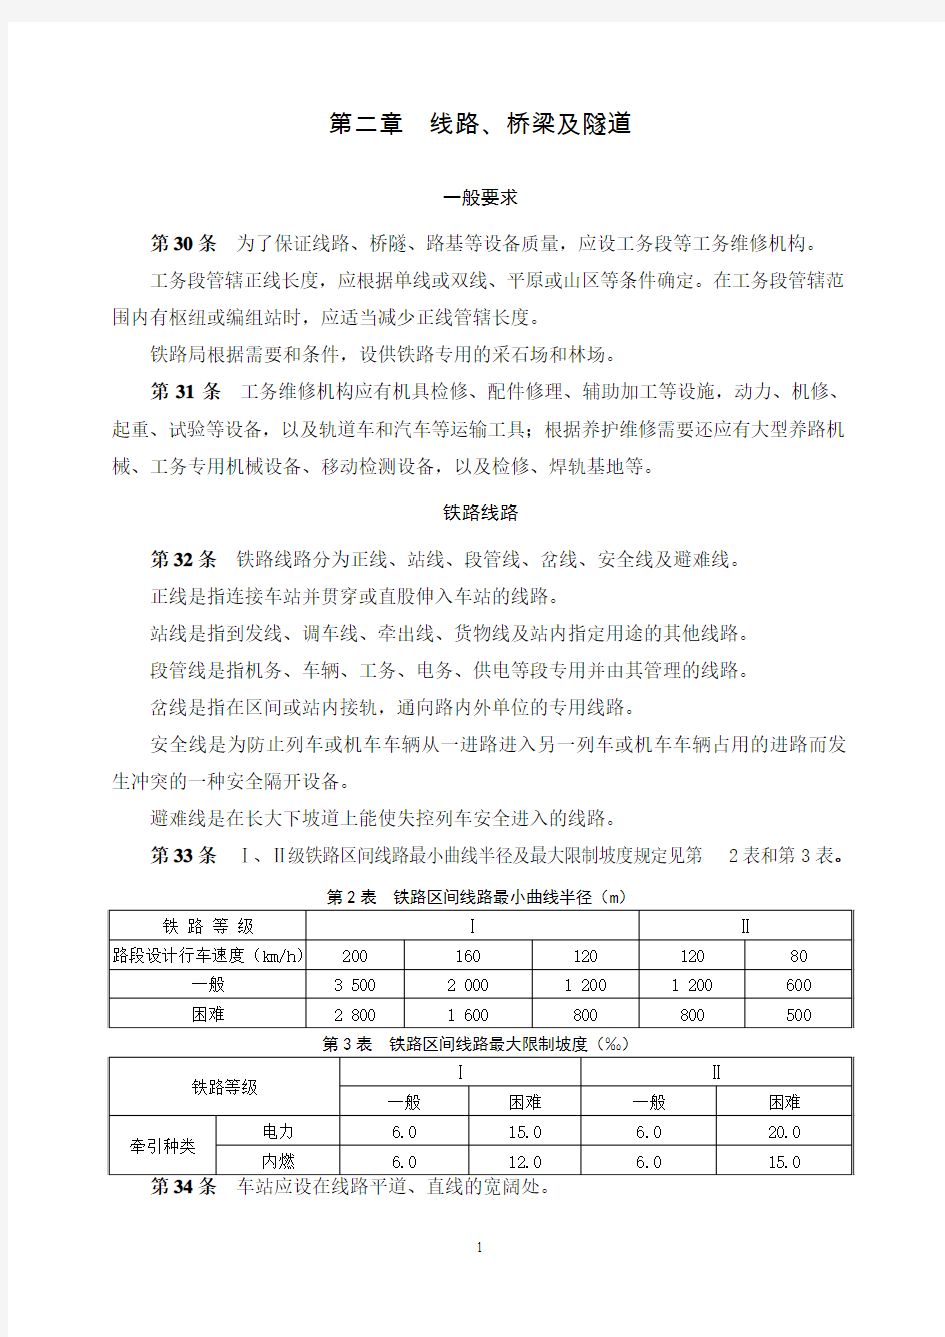 中国铁路总公司《铁路技术管理规程》(工务)